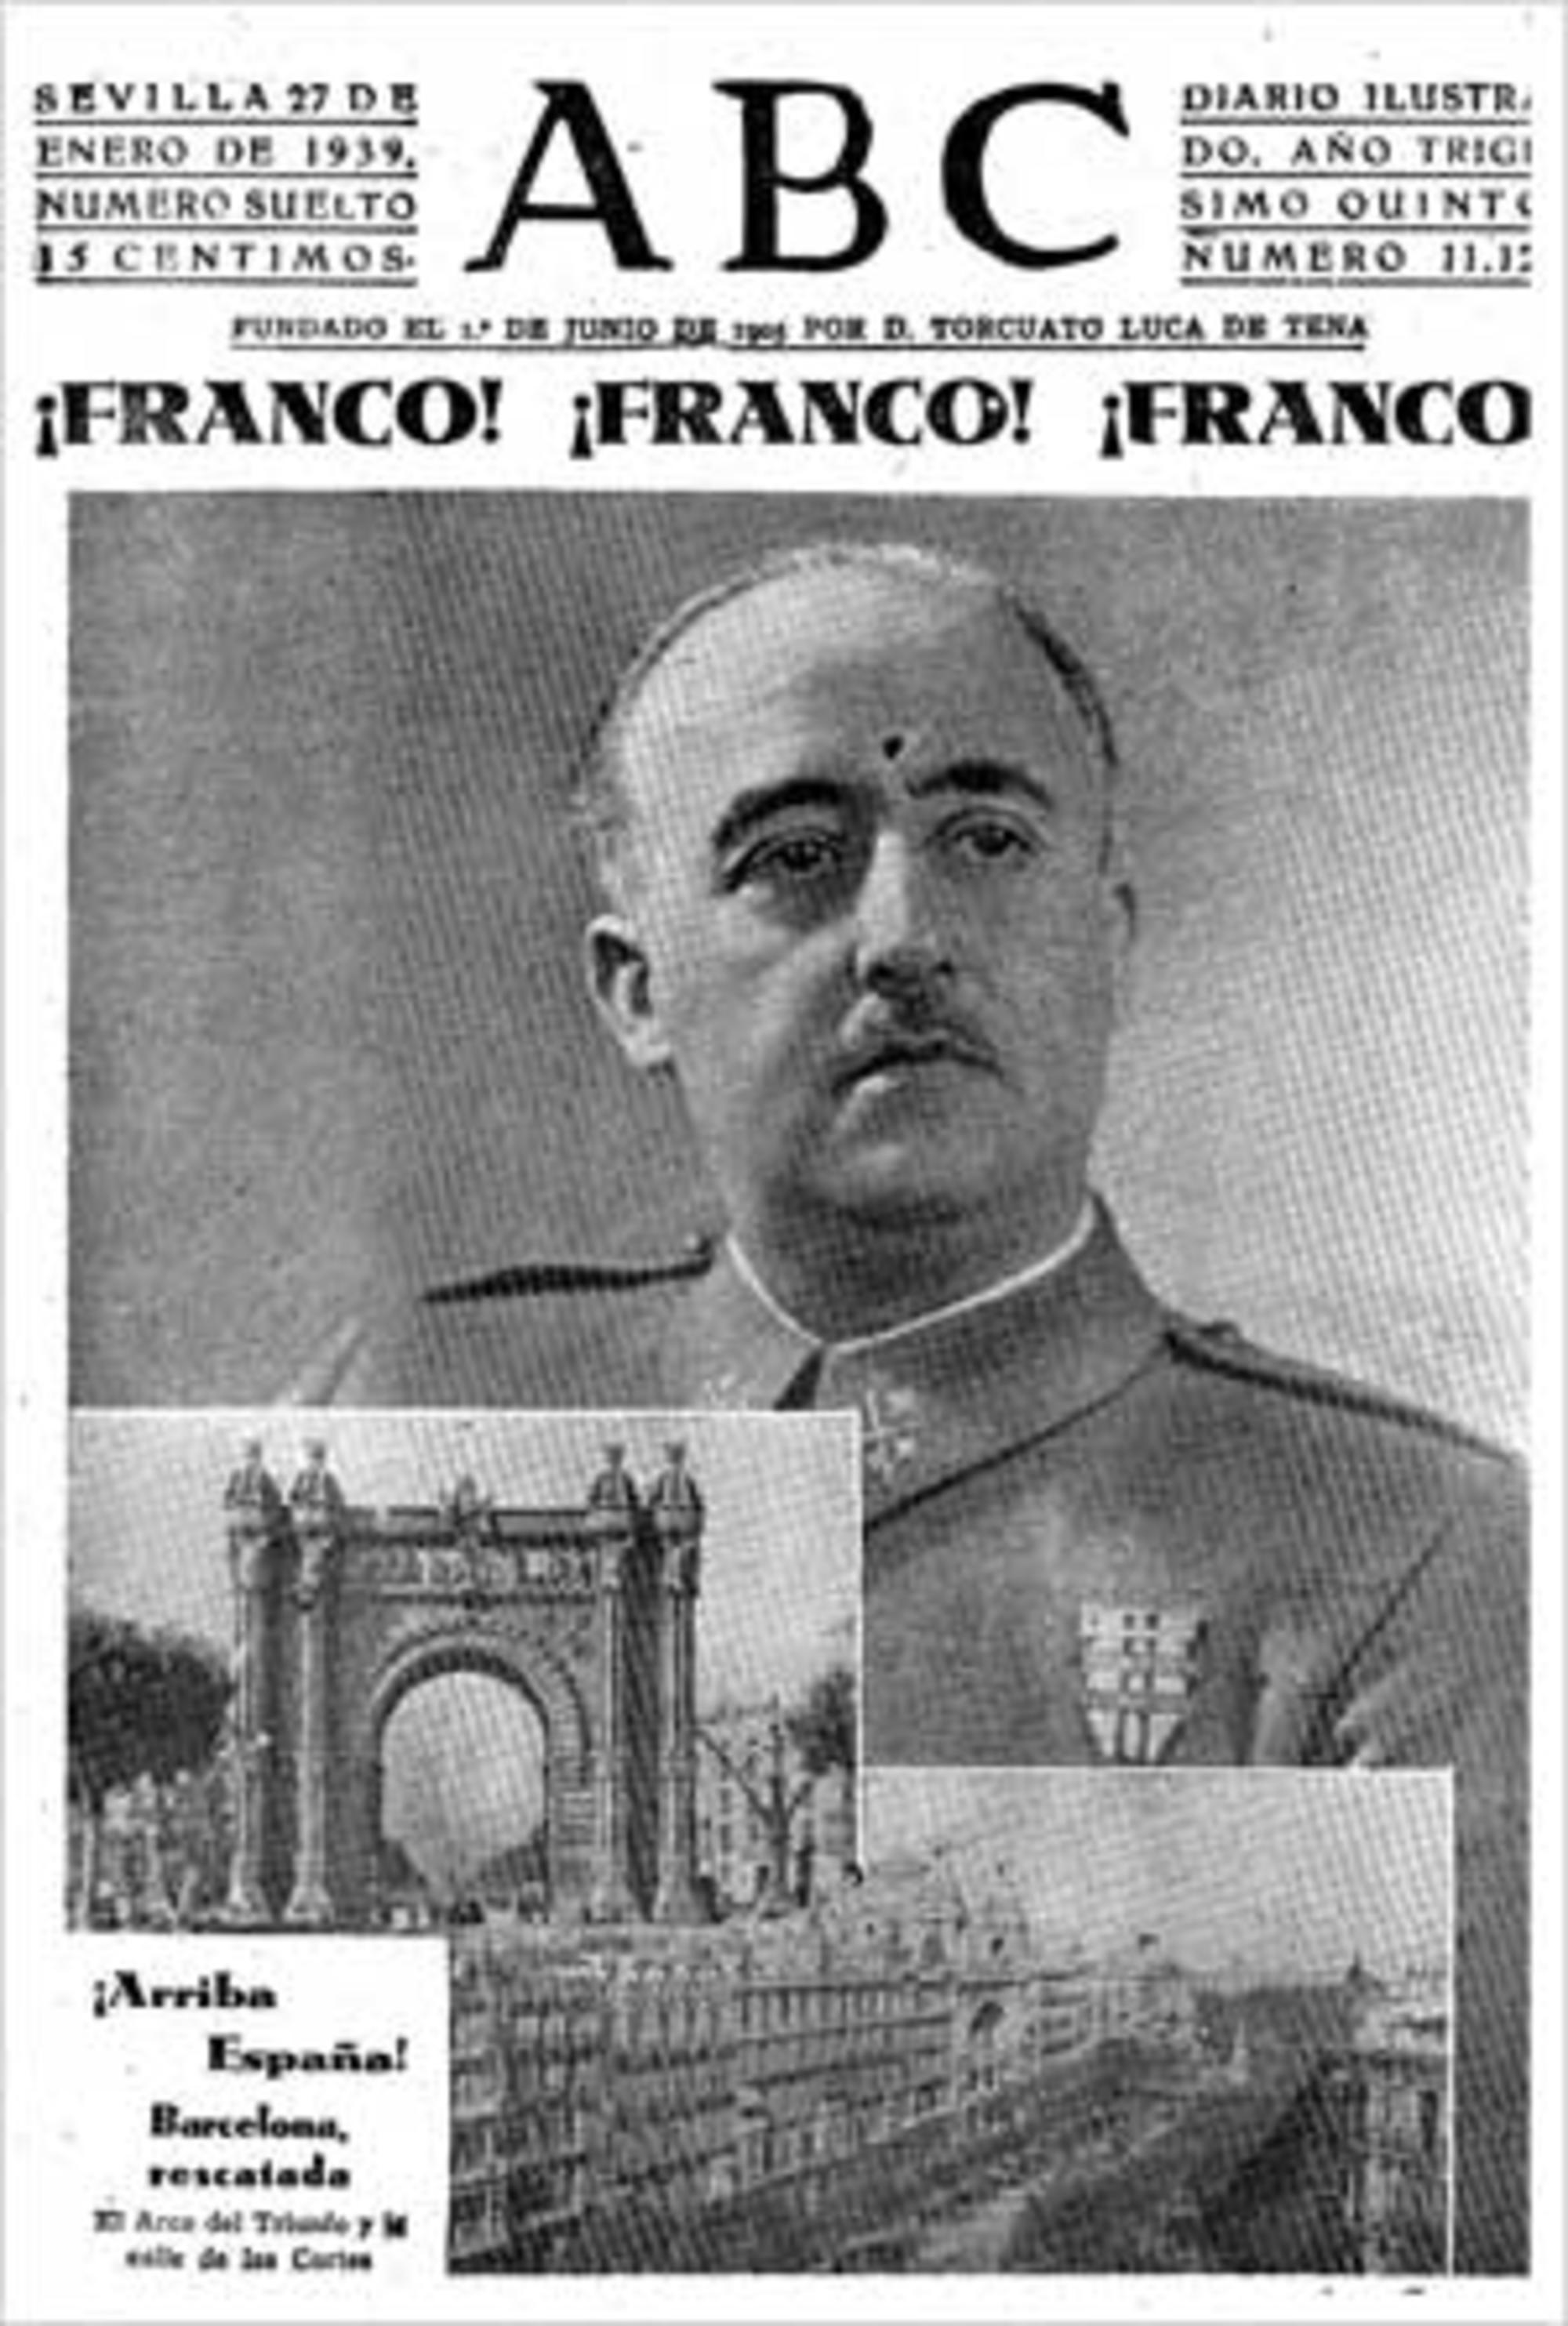 Franco, Franco, Franco